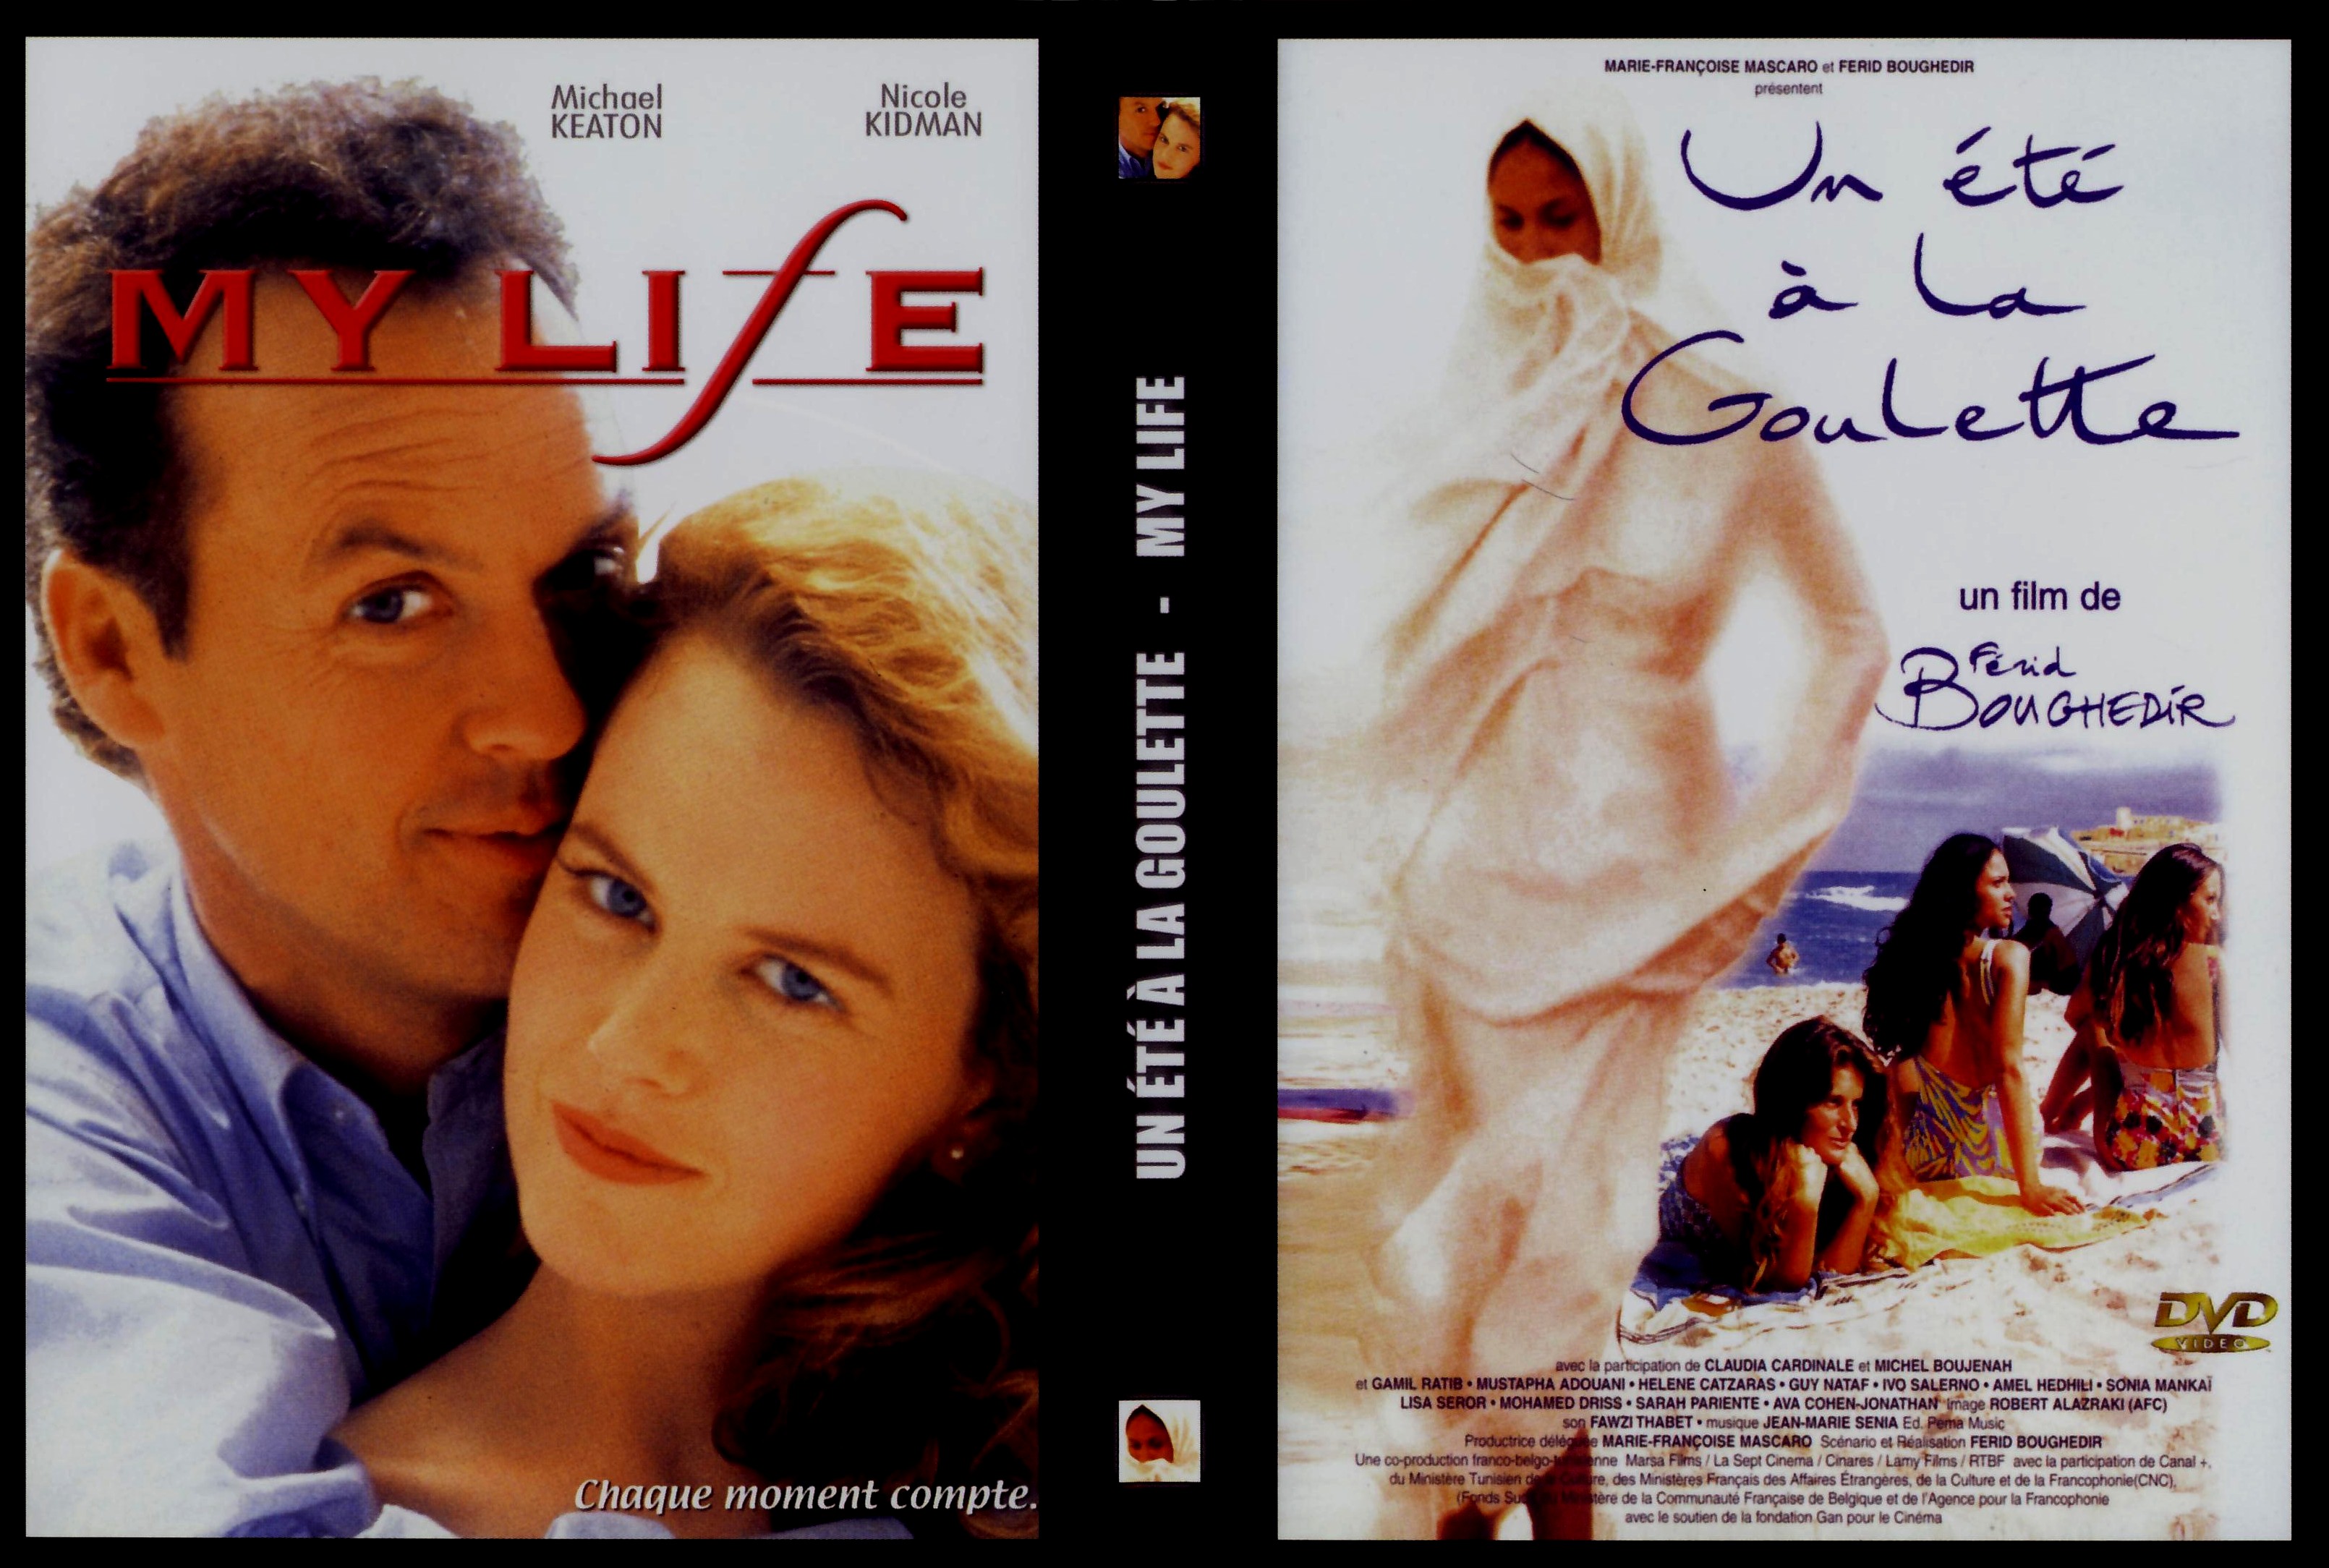 Jaquette DVD Un t  la goulette - My life